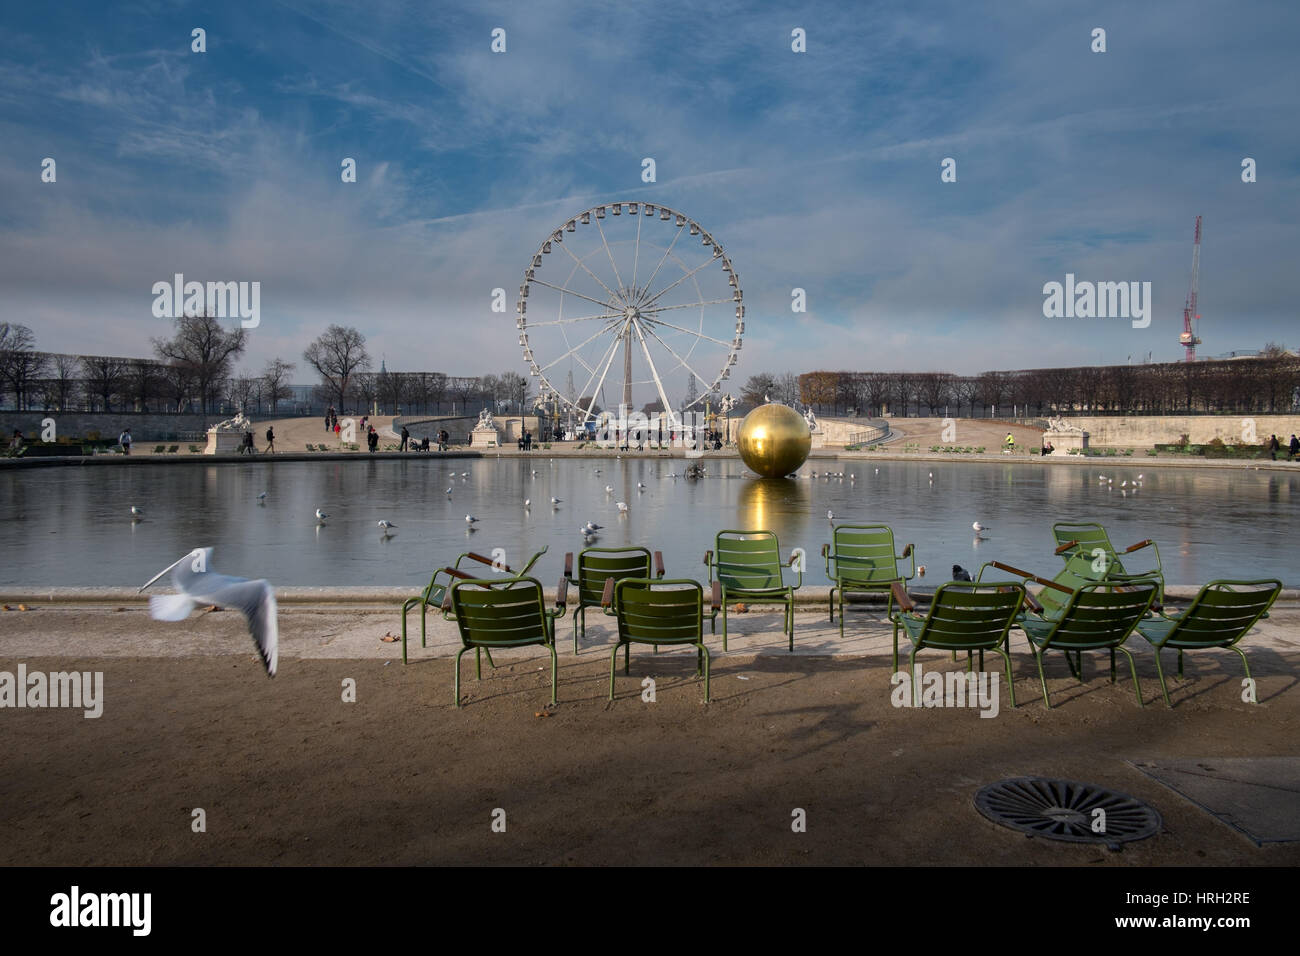 Soleil d'hiver à Grand bassin octogonal du Jardin des Tuileries, dominé par la Grande Roue, Paris, France Banque D'Images